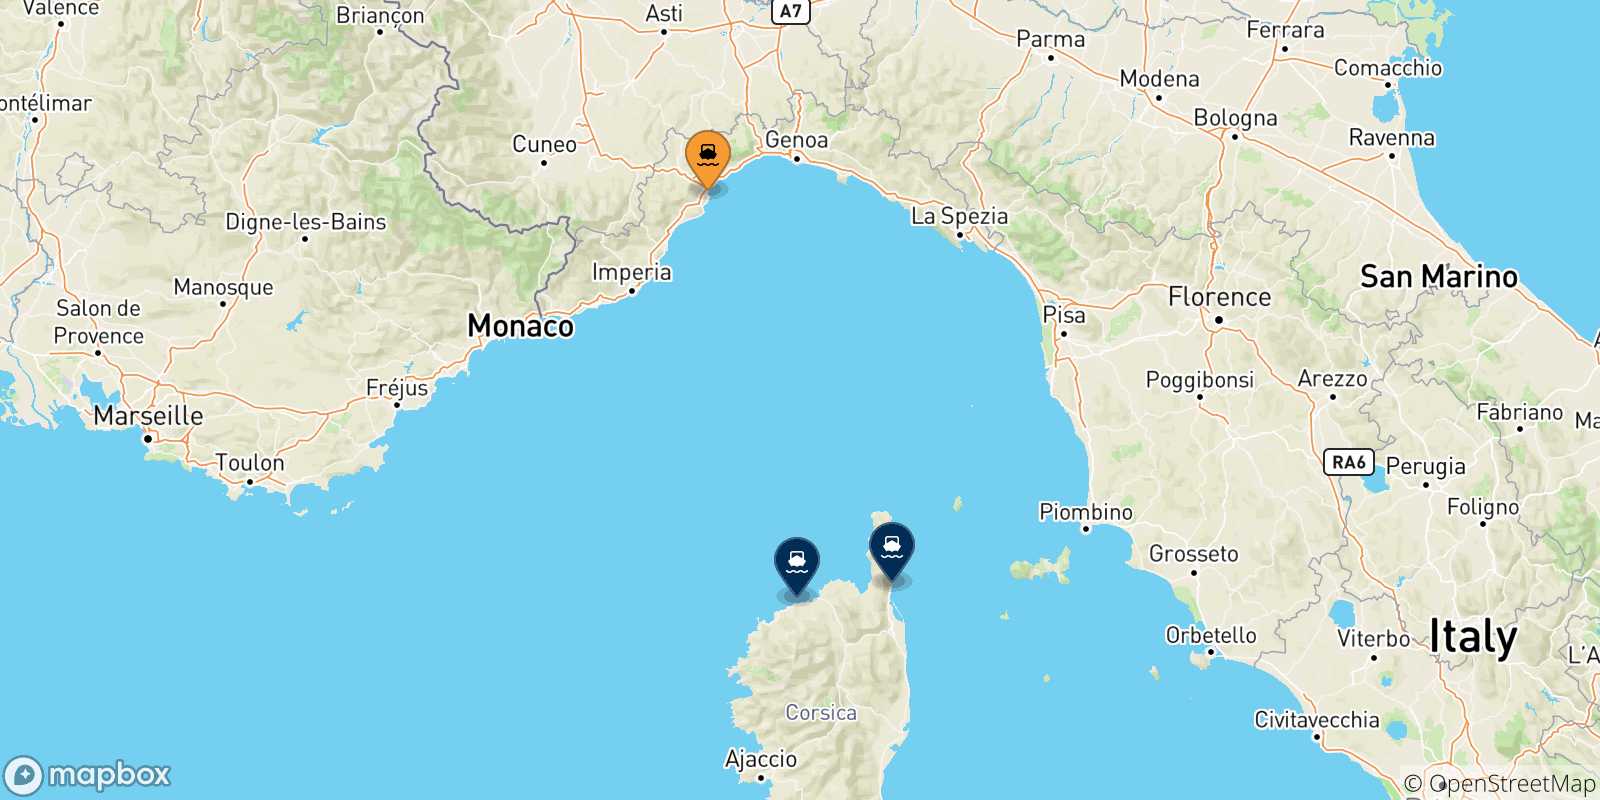 Mappa delle possibili rotte tra Savona e la Corsica